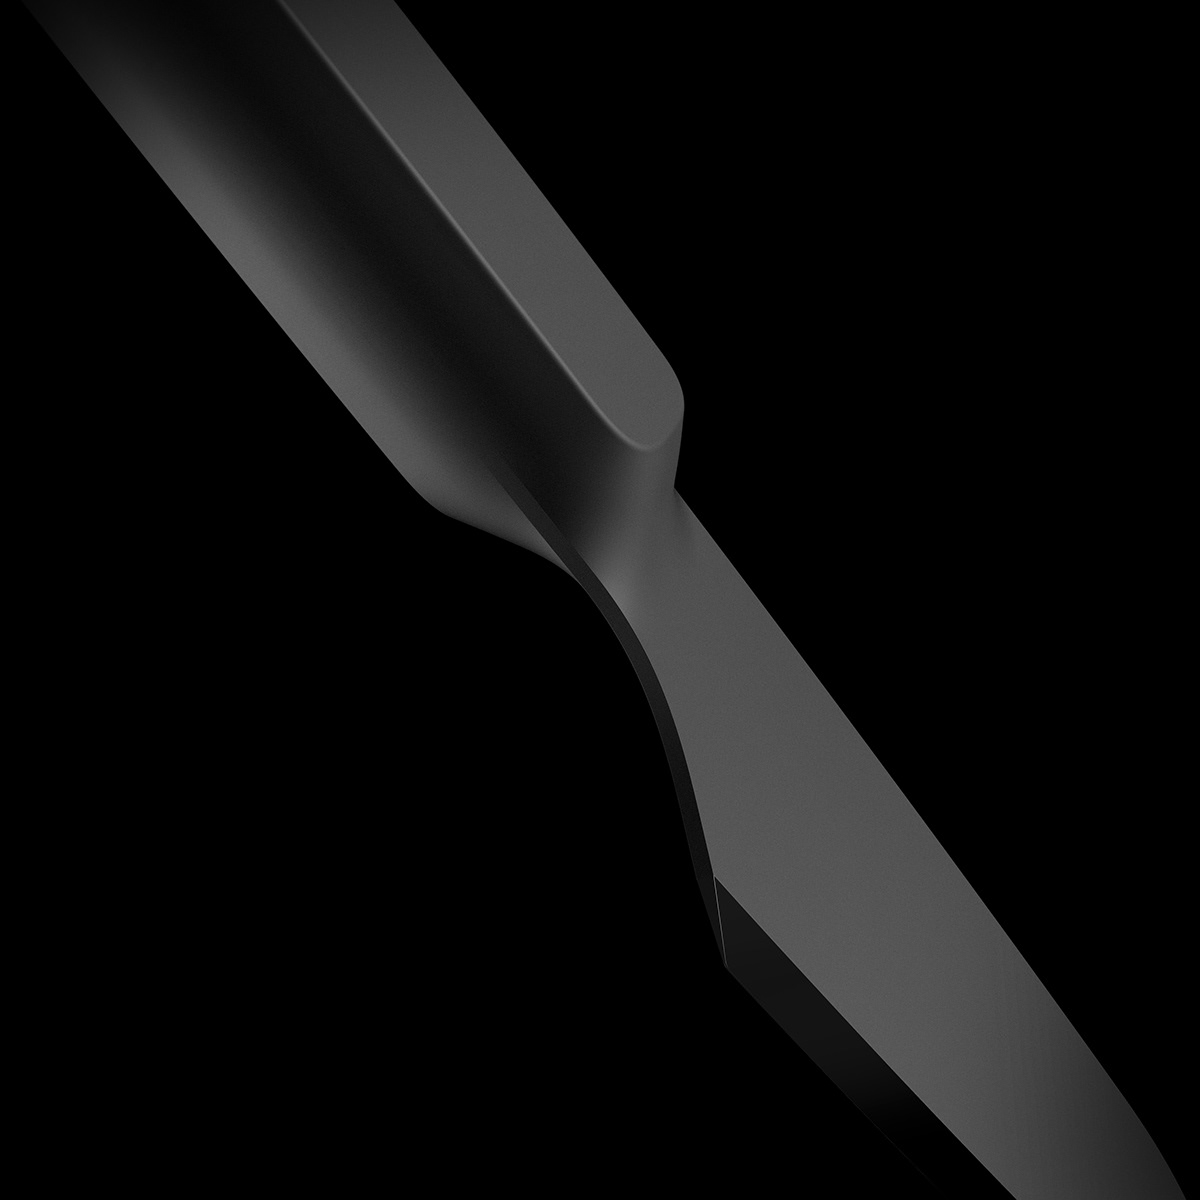 3D concept design industrialdesign kitchen knife KnifeDesign productdesign Render tools